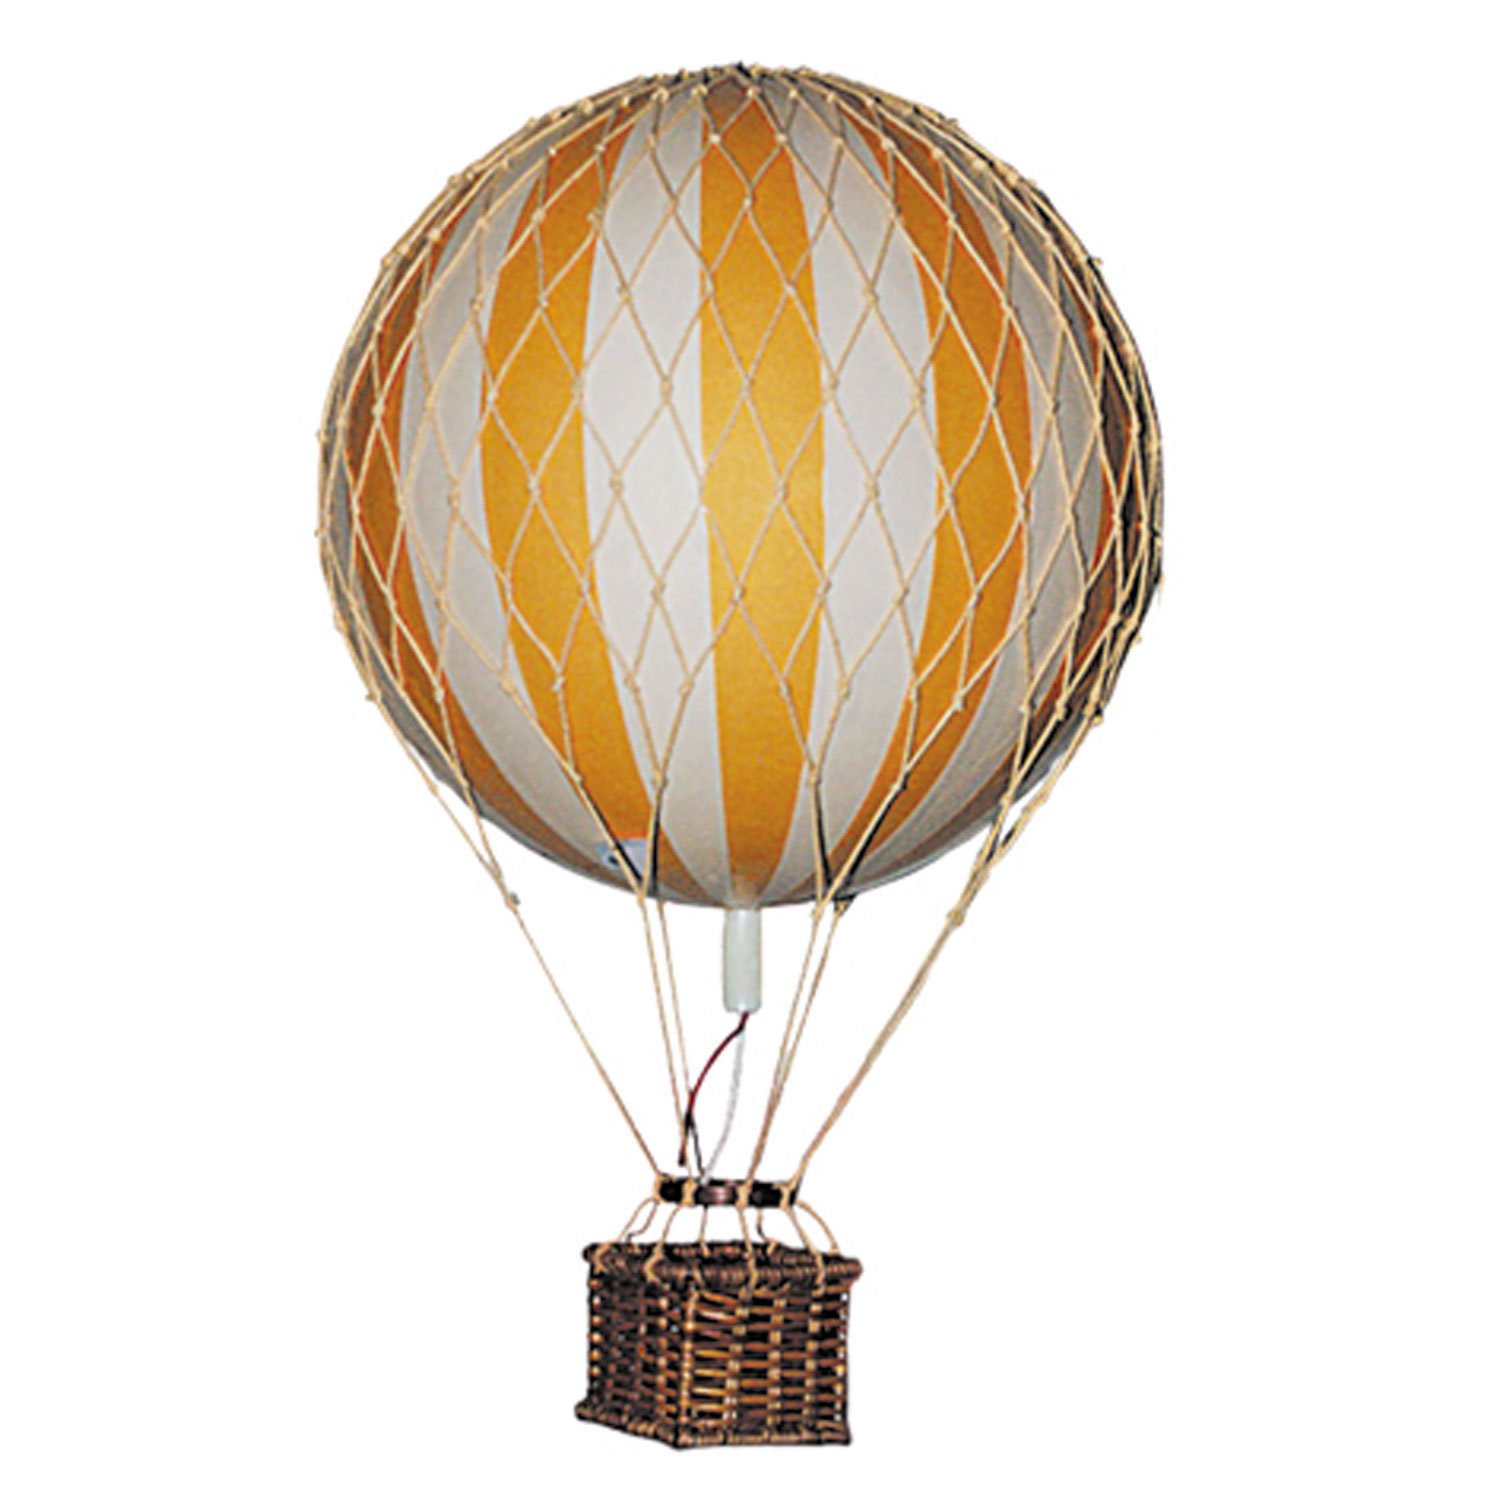 Шар с корзиной как называется. Воздушный шар. Воздушный шар с корзиной. Корзинка для воздушного шара. Плетеная корзина для воздушного шара.